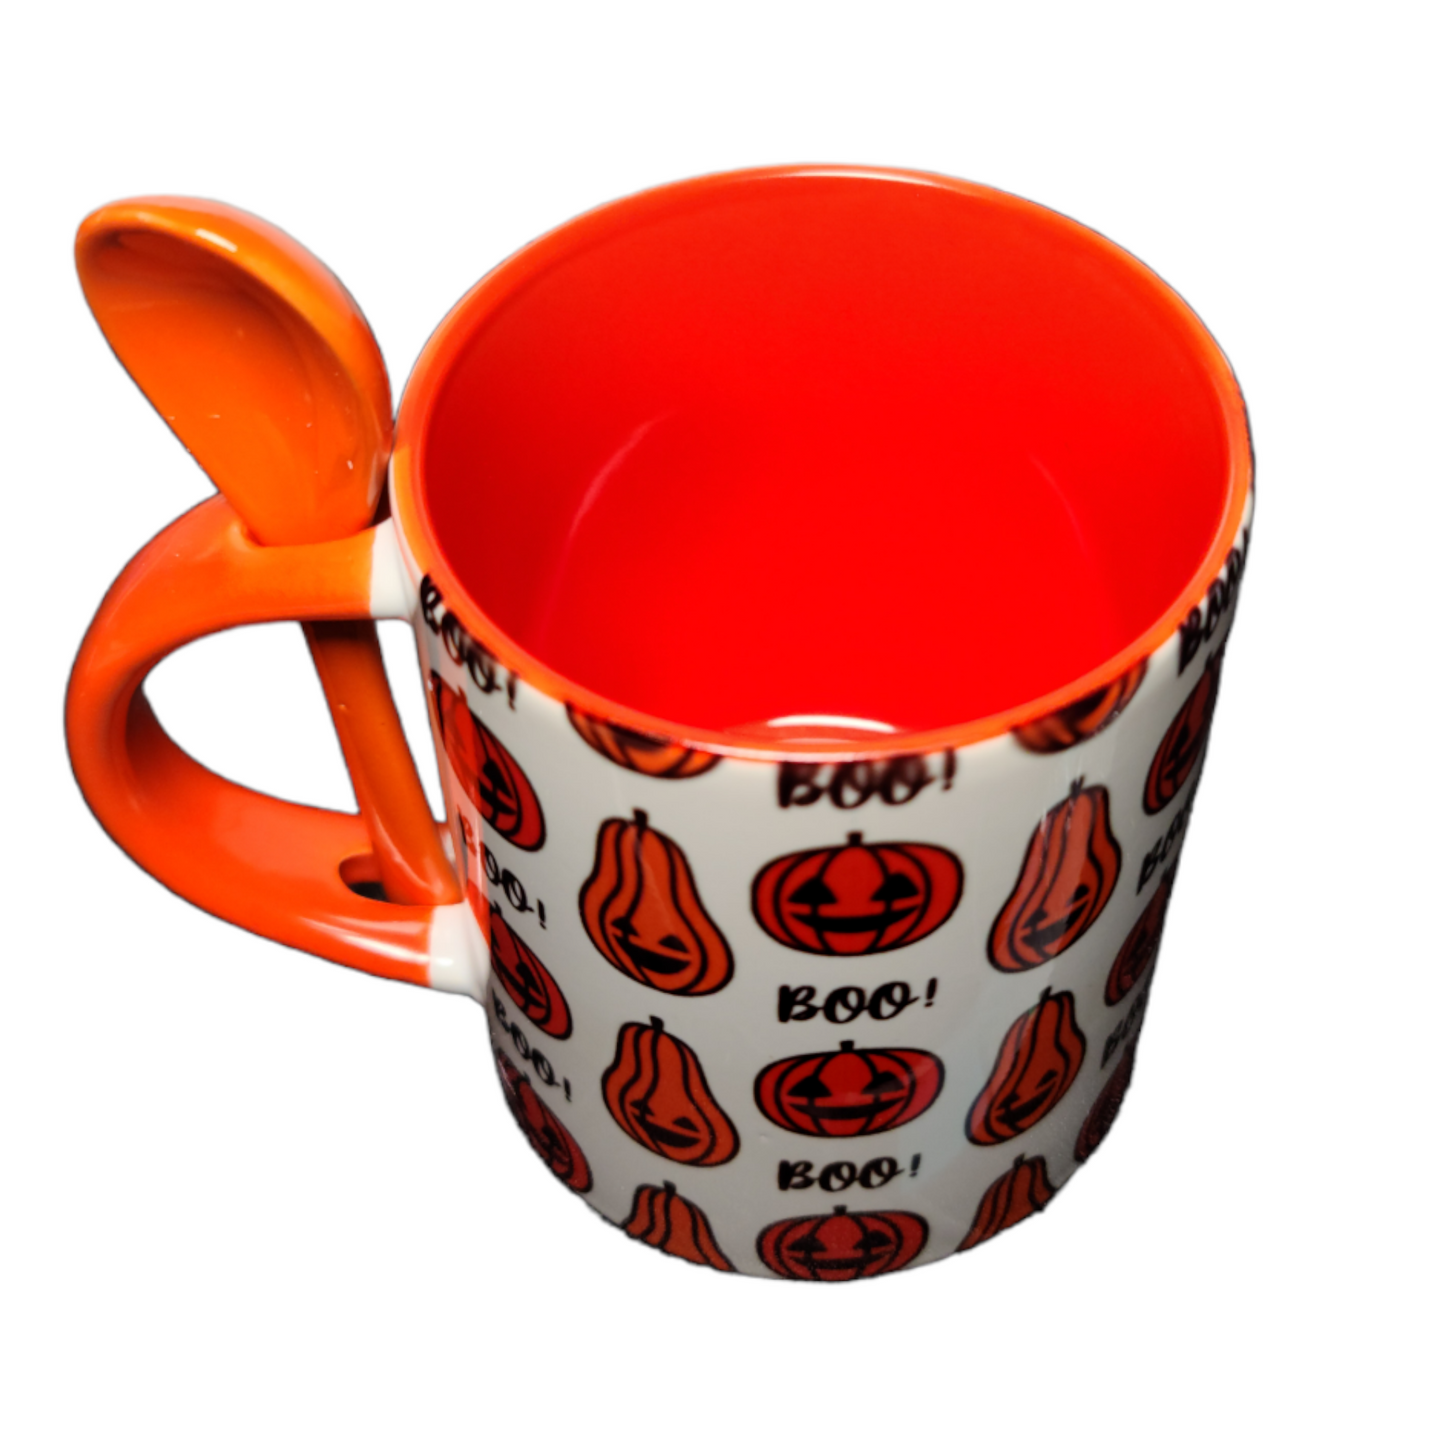 Halloween mug with spoon, Tea cup, pumpkin, Coffee mug, Spooky gift for kid, Halloween Treat, Specialty cup, drinkware, Boo mug, orange cup